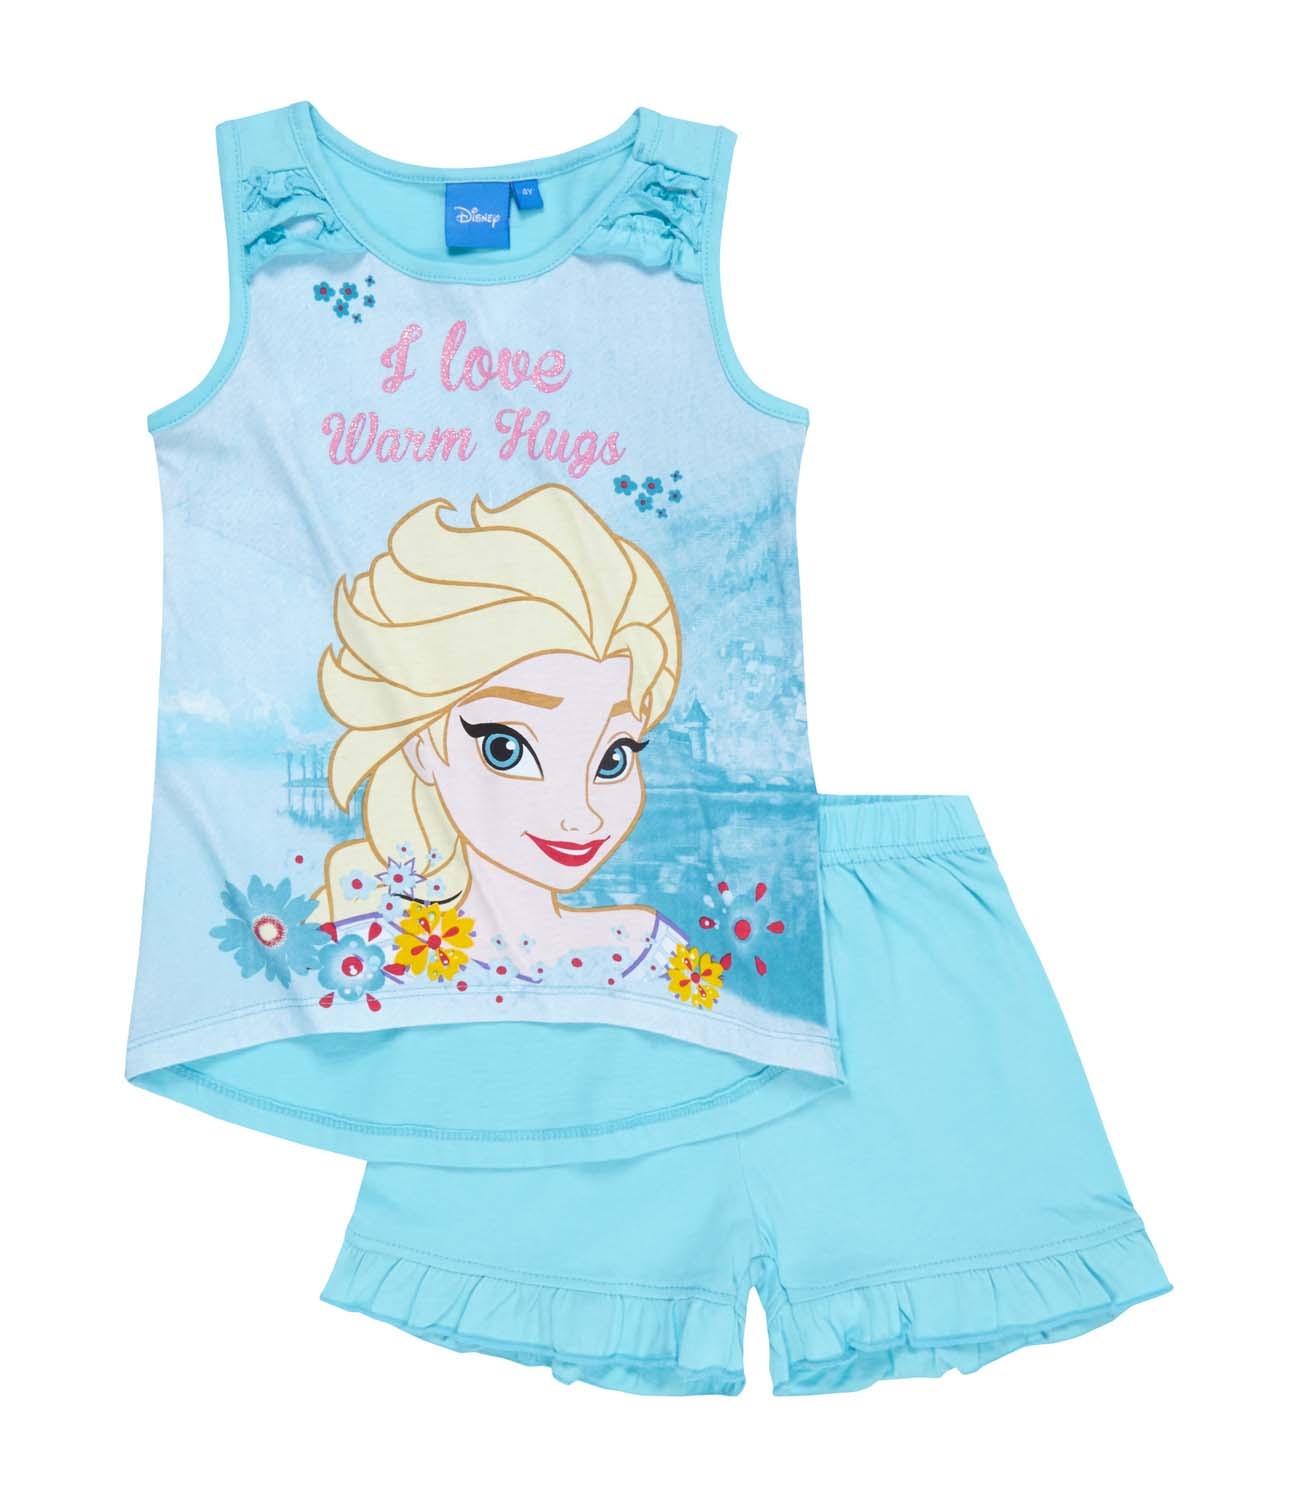 Frozen® Pijama (4-10 ani)